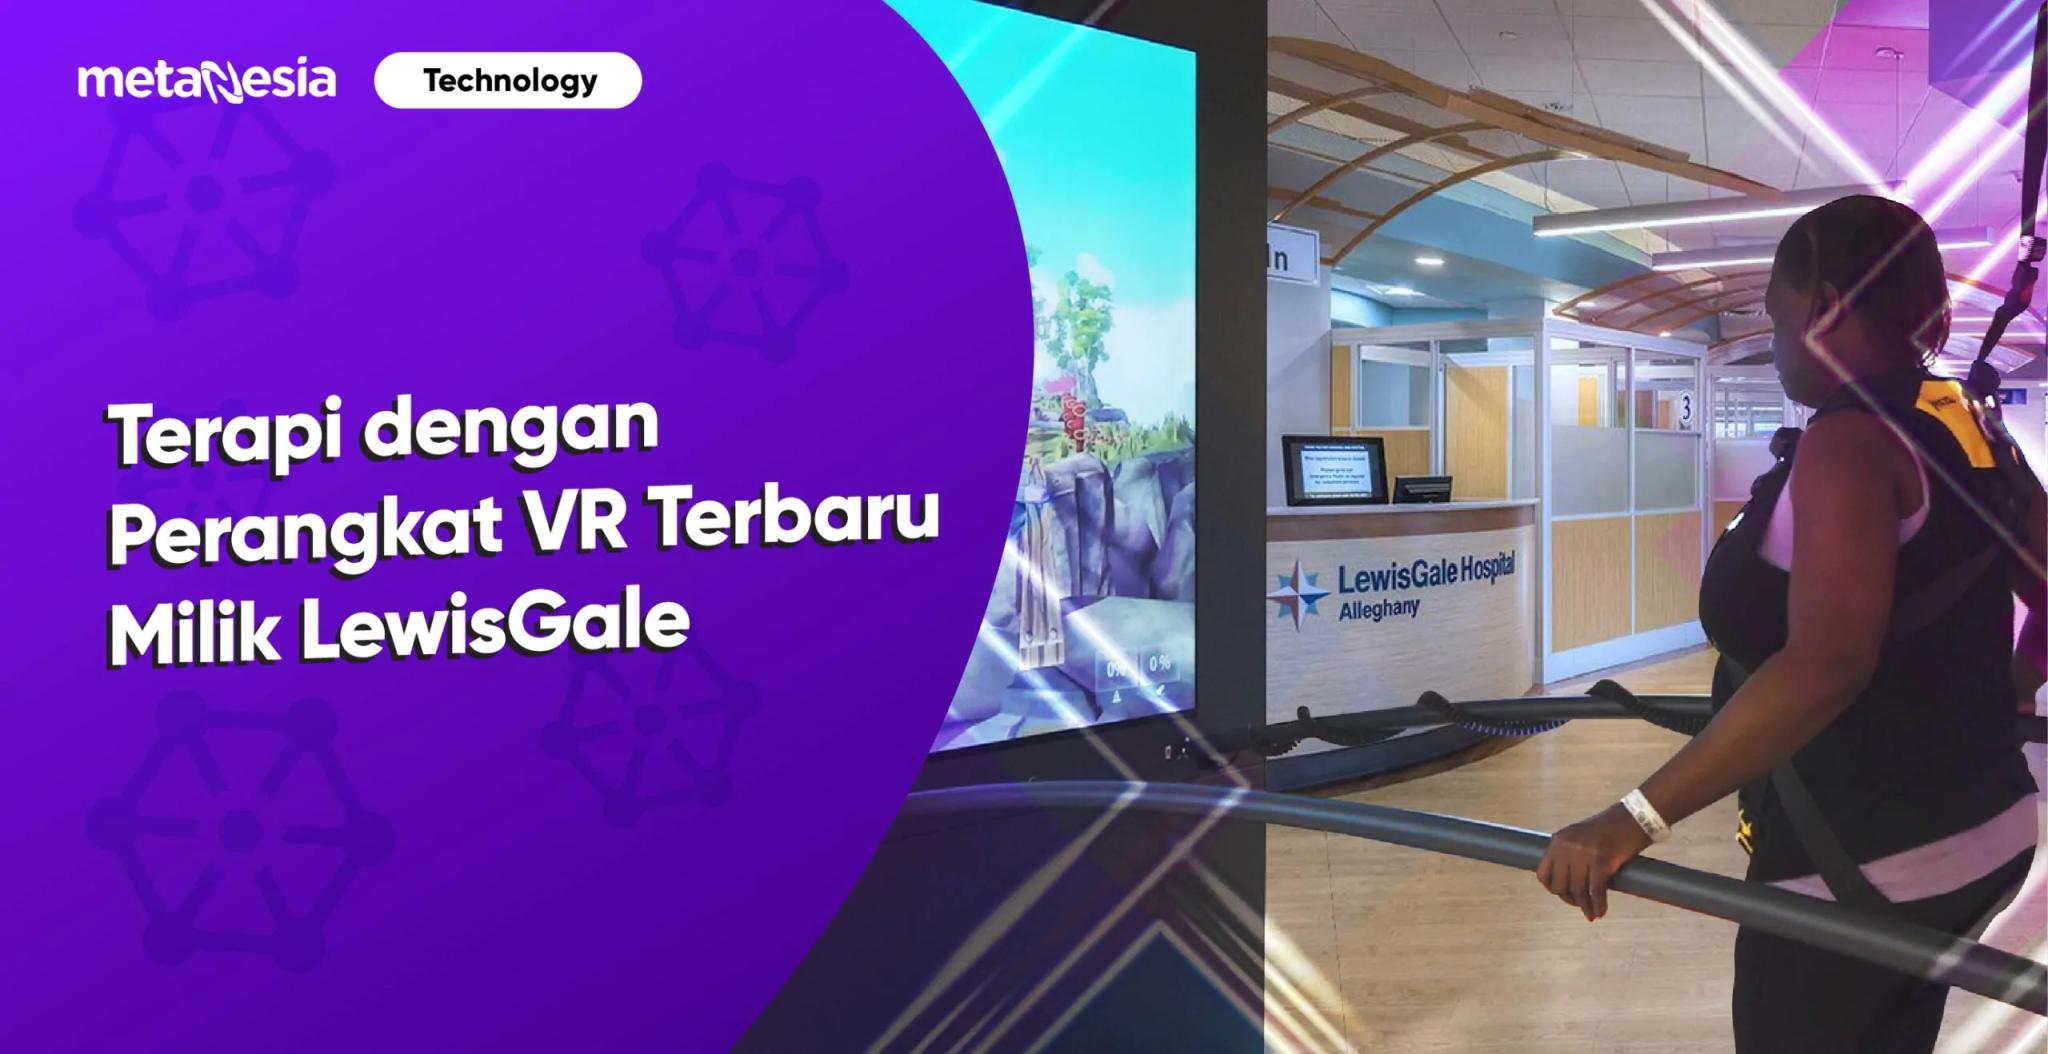 Perangkat VR Terapi Milik LewisGale Medical Center untuk Rehabilitasi